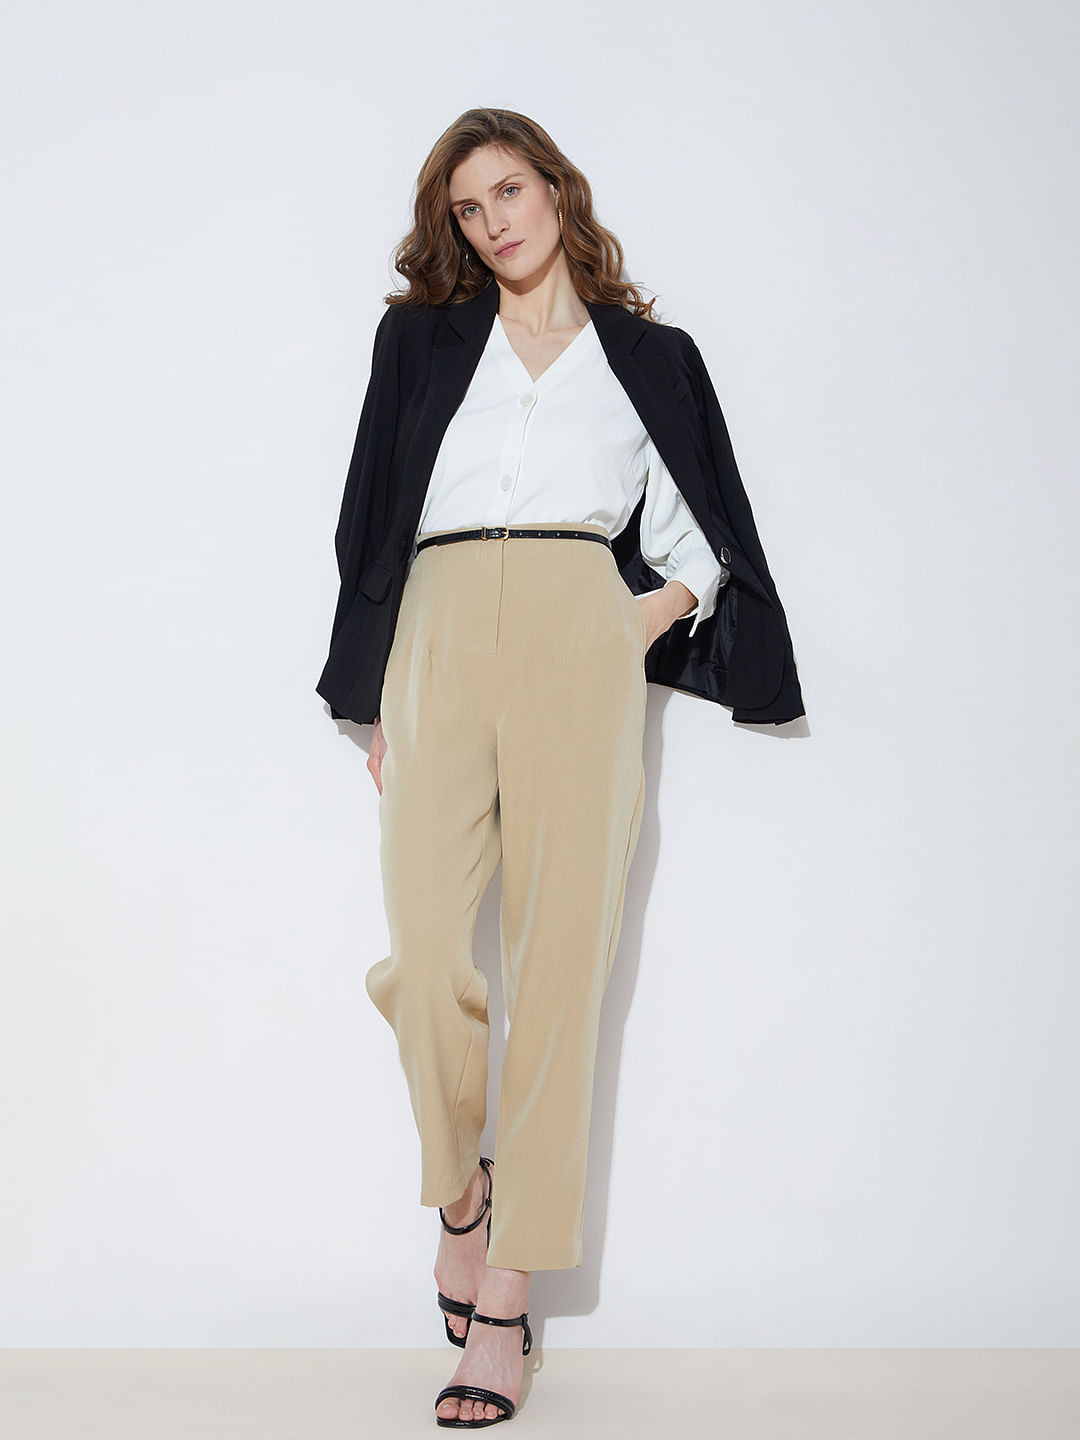 Tall Victoria High Waisted Dress Pants - White | Fashion Nova,  Career/Office | Fashion Nova